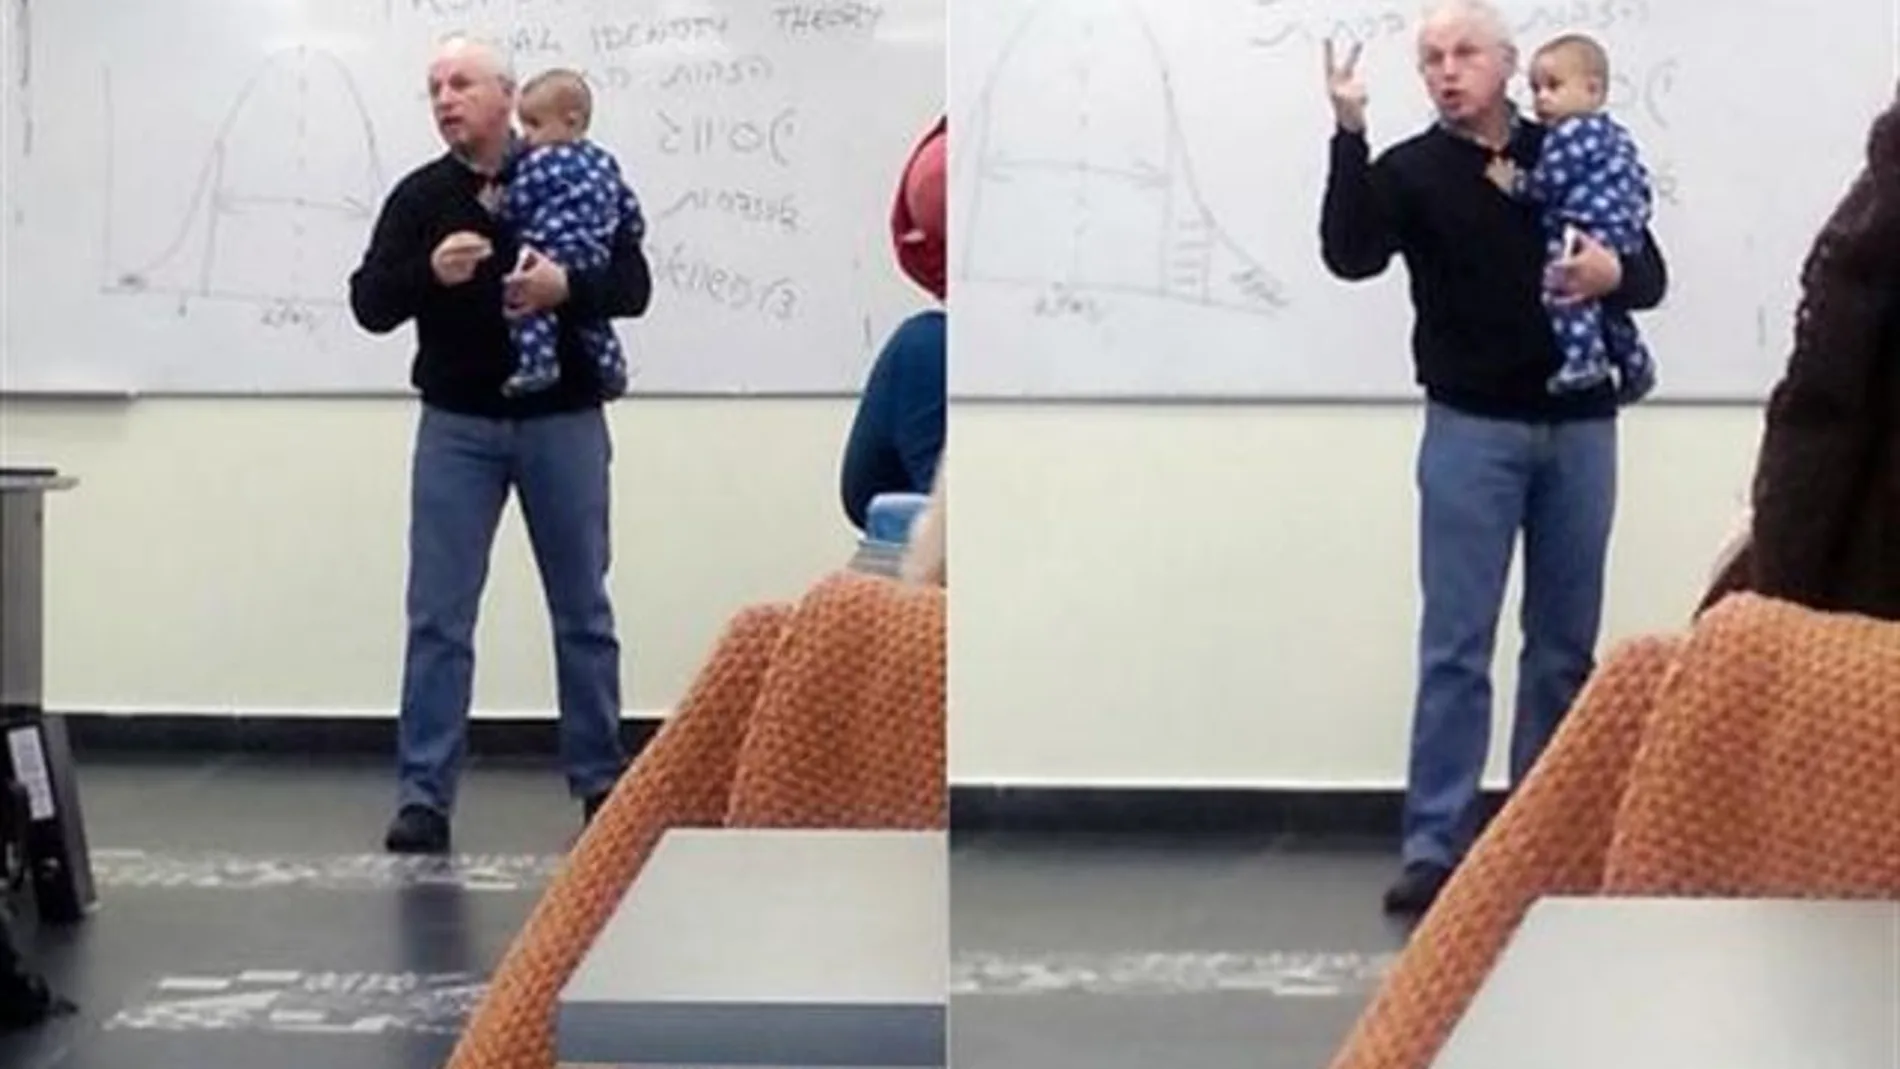 Sydney Engelberg dando clase con un bebé en brazos